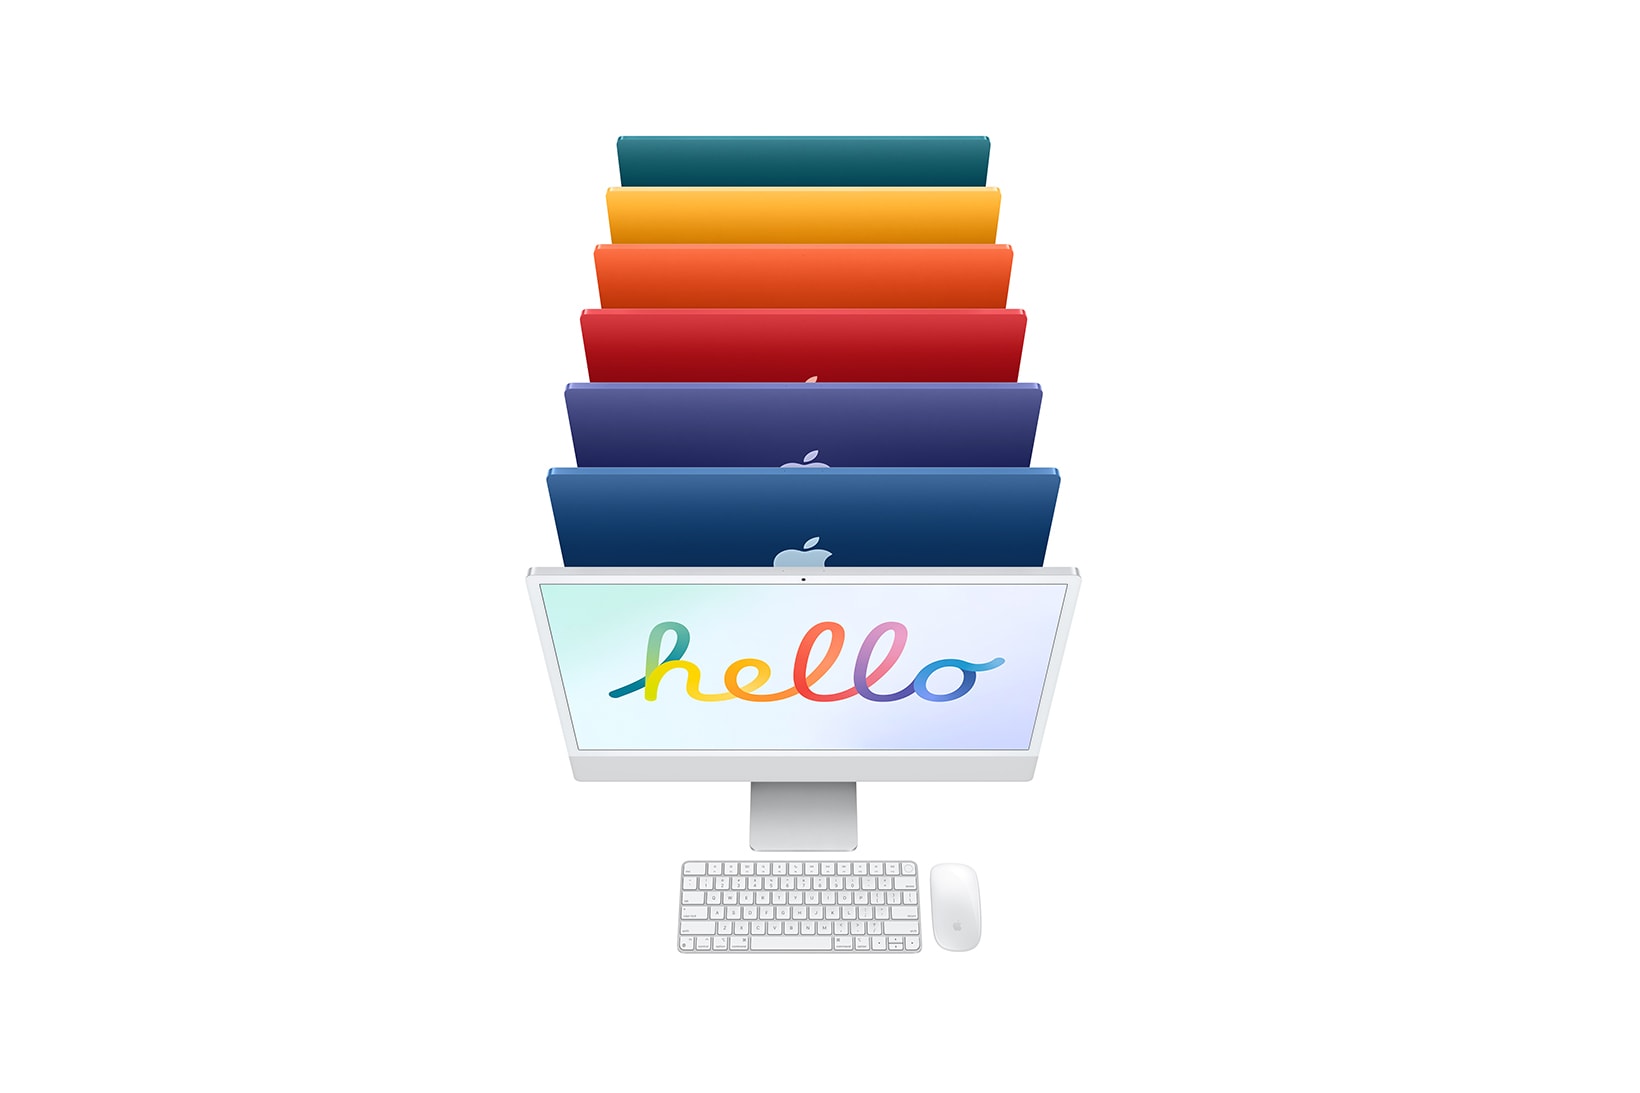 Apple iMac Colors April Event